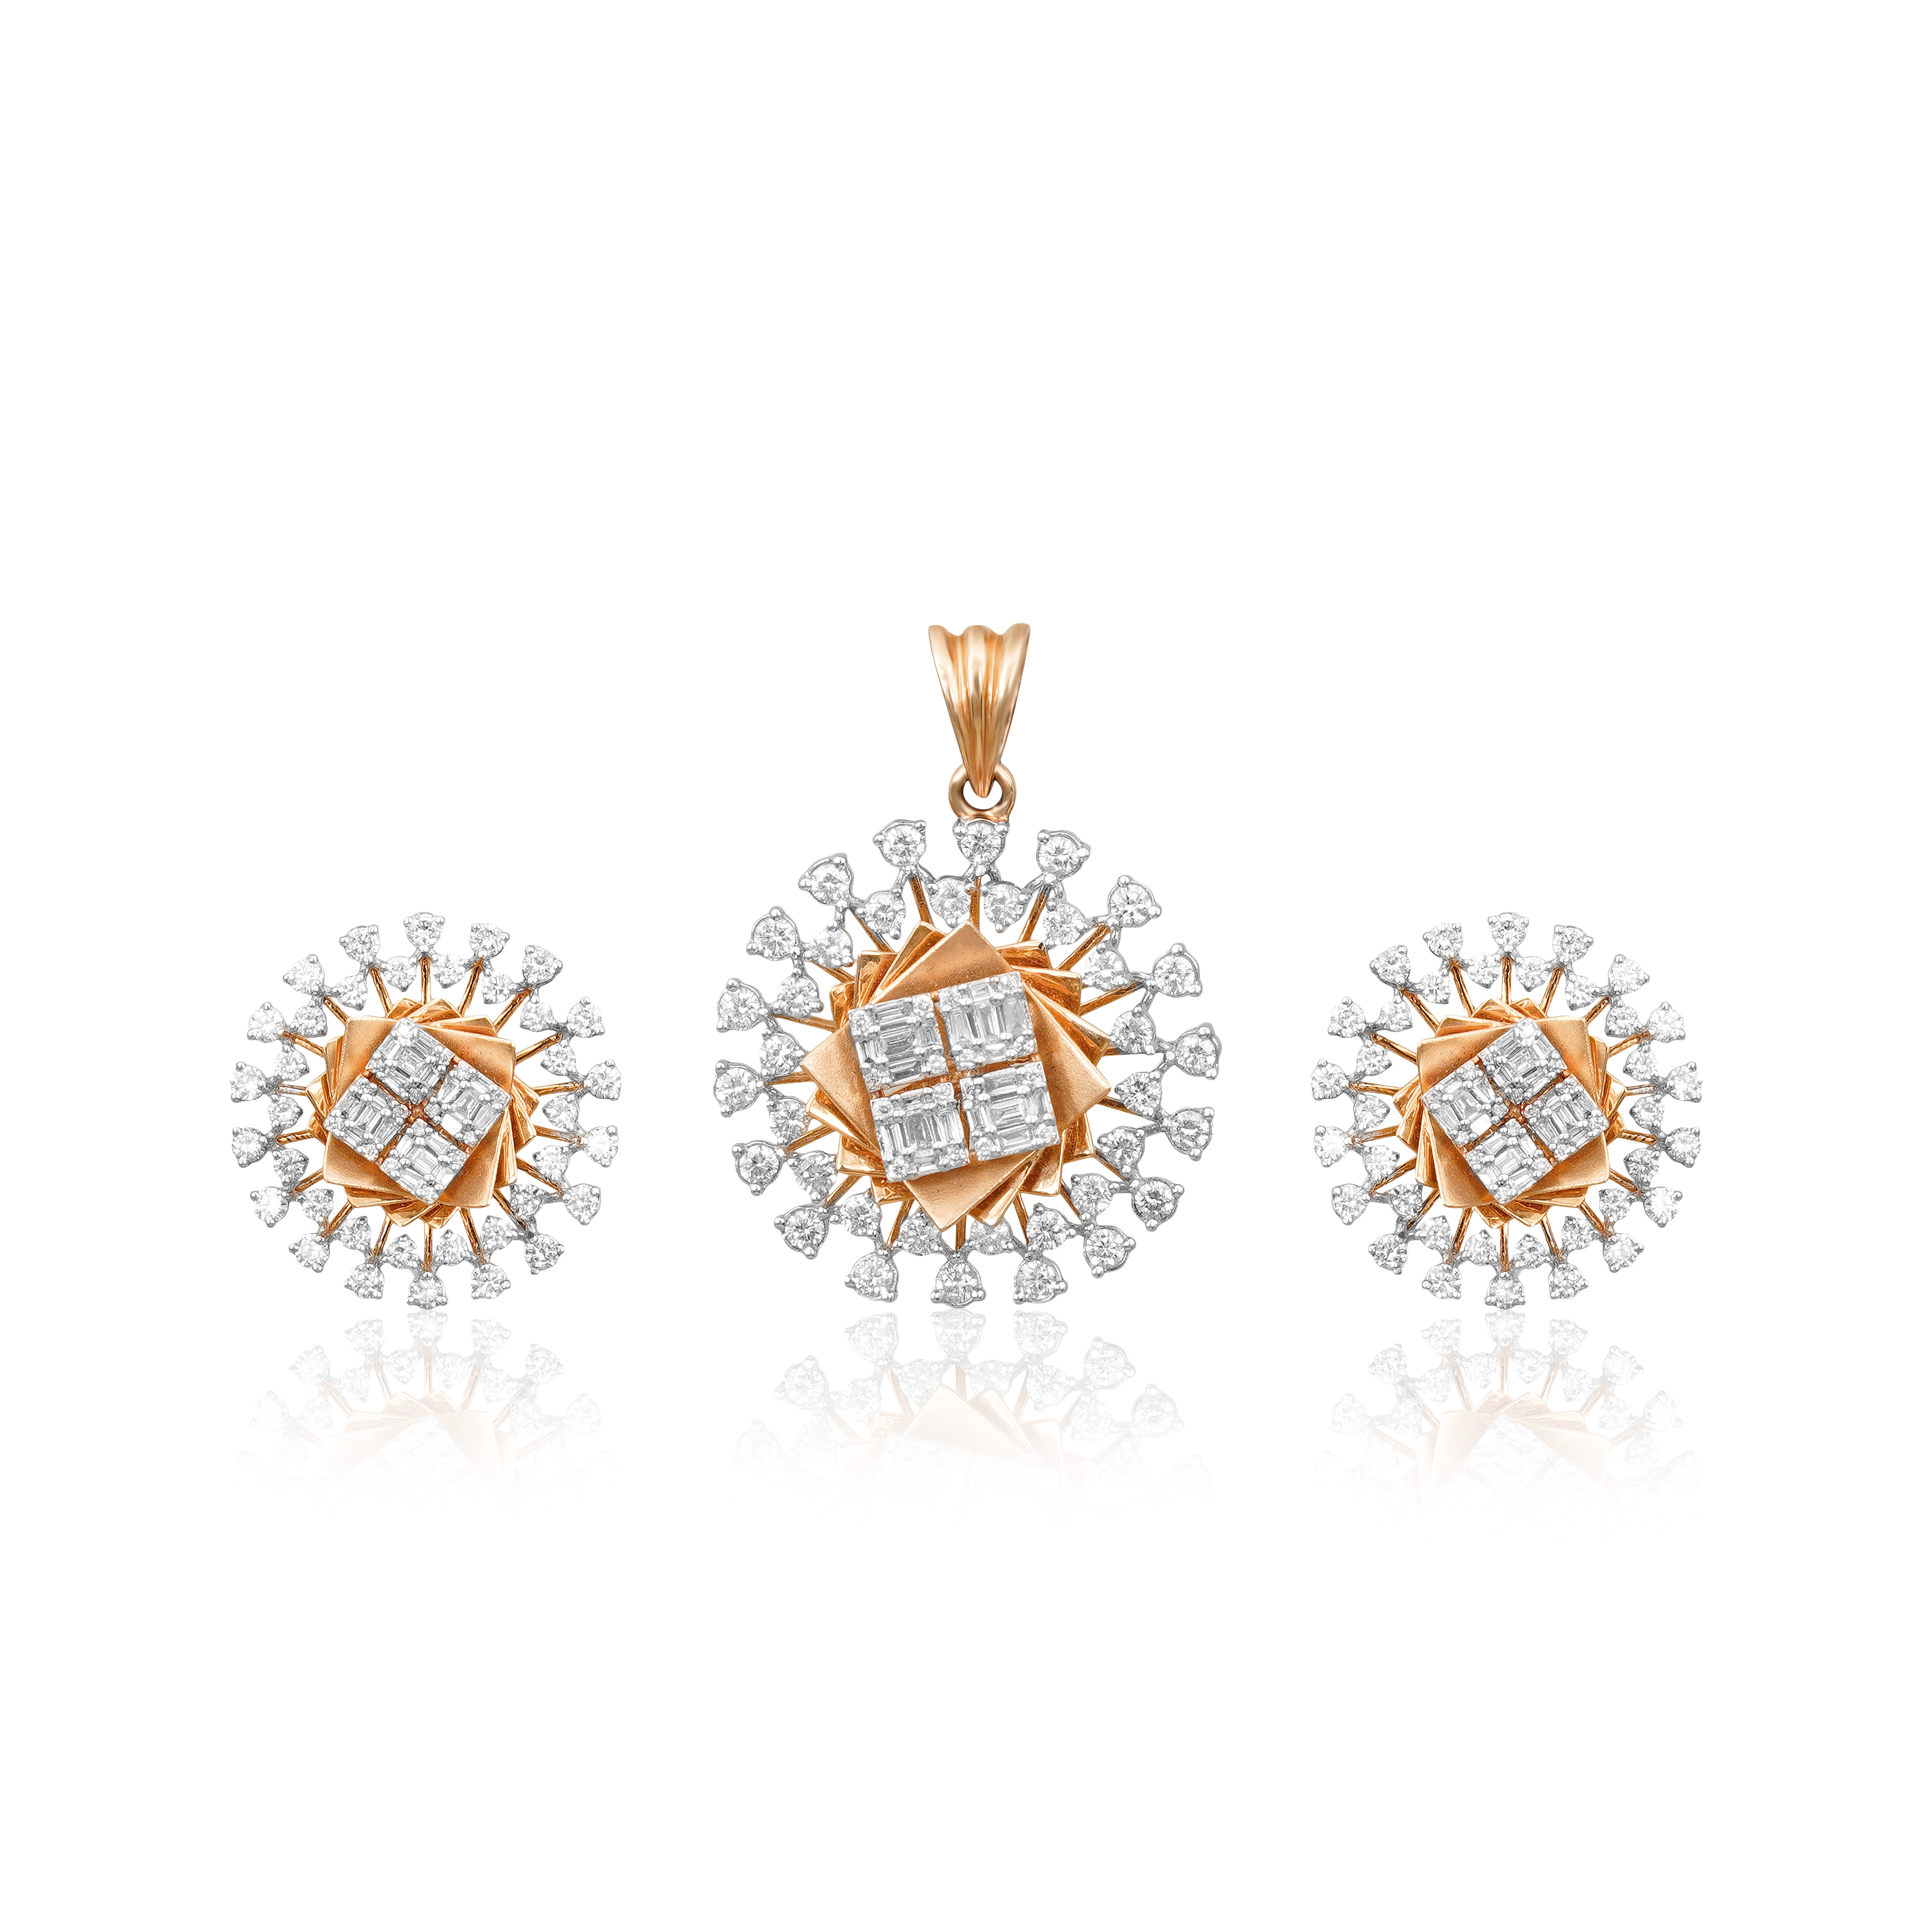 Saffron Gold and diamond pendant